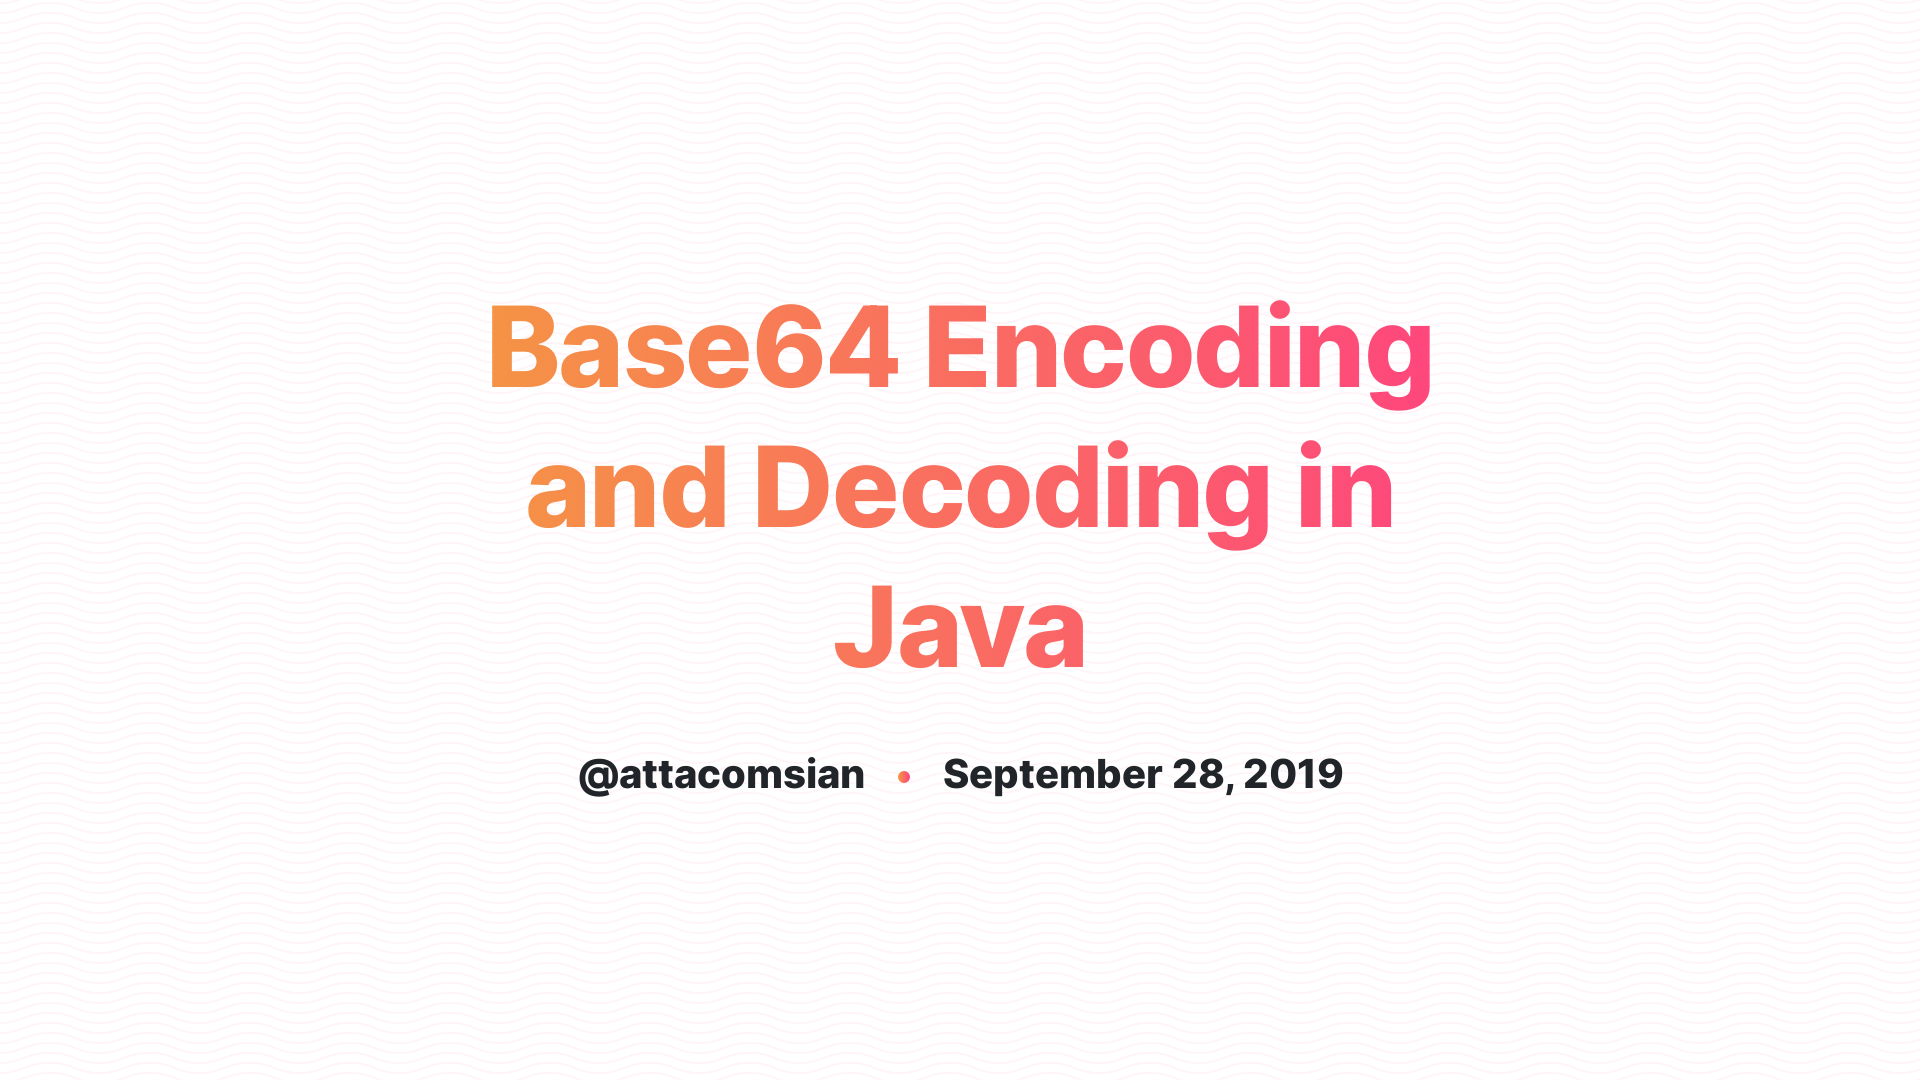 python ecode image in base64 encoding